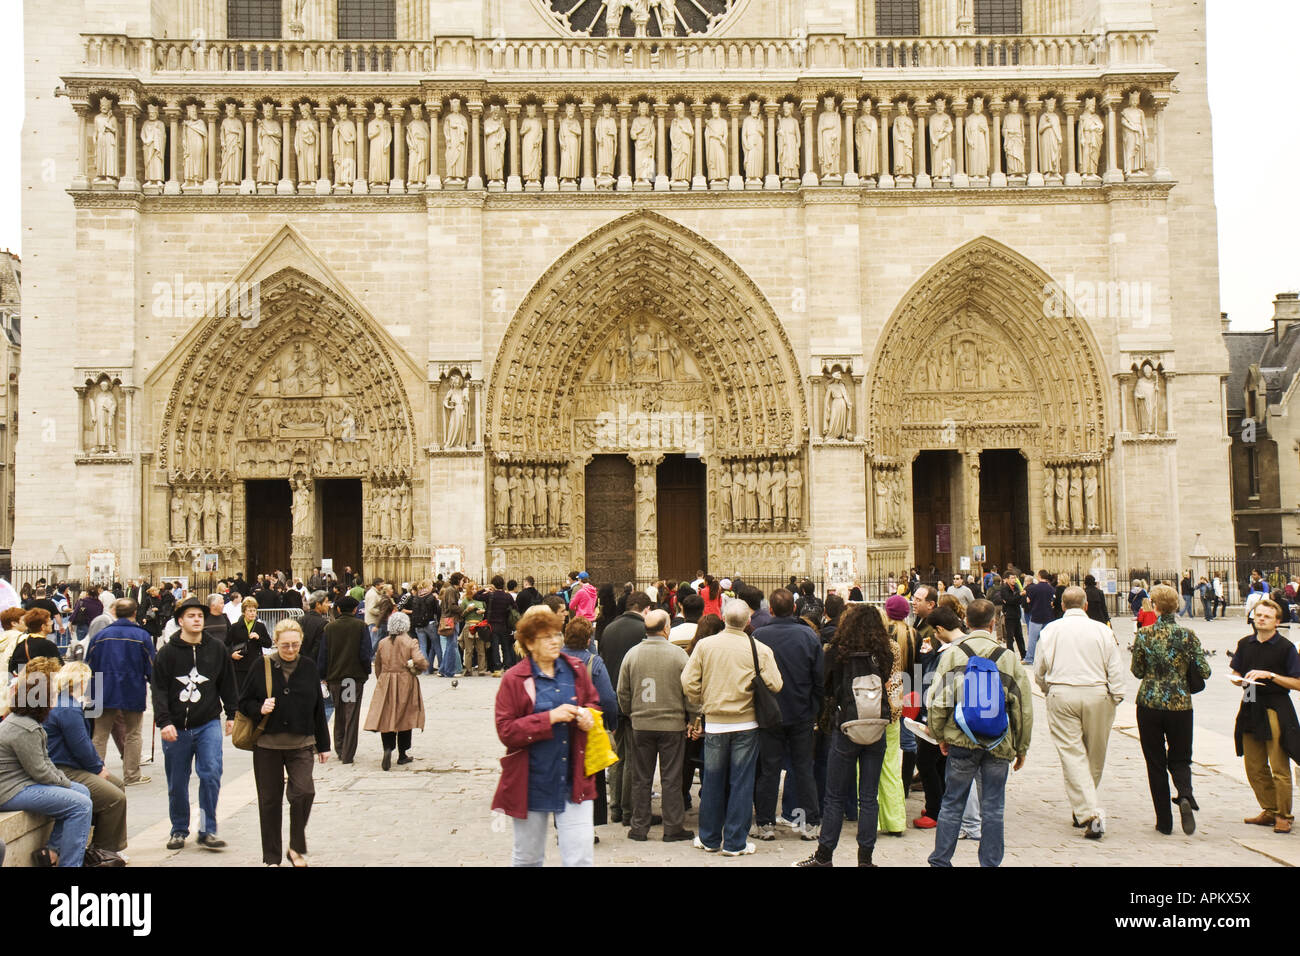 Portail de Notre Dame avec les touristes, France, Paris Banque D'Images